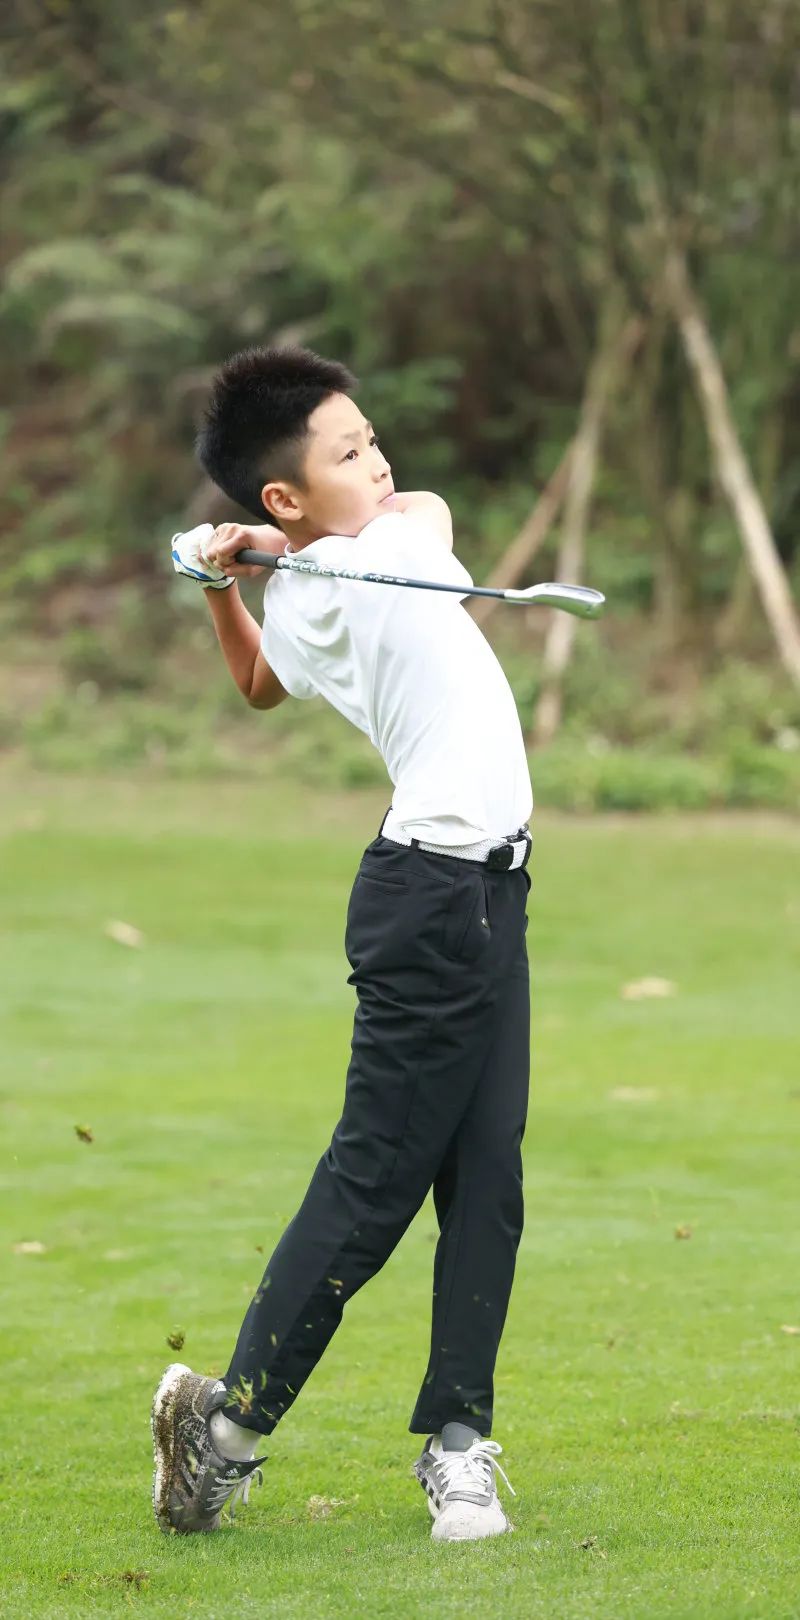 高光！广州市首家“校园高尔夫特色学校”带你回顾第十九届华美少年杯高尔夫球系列赛！